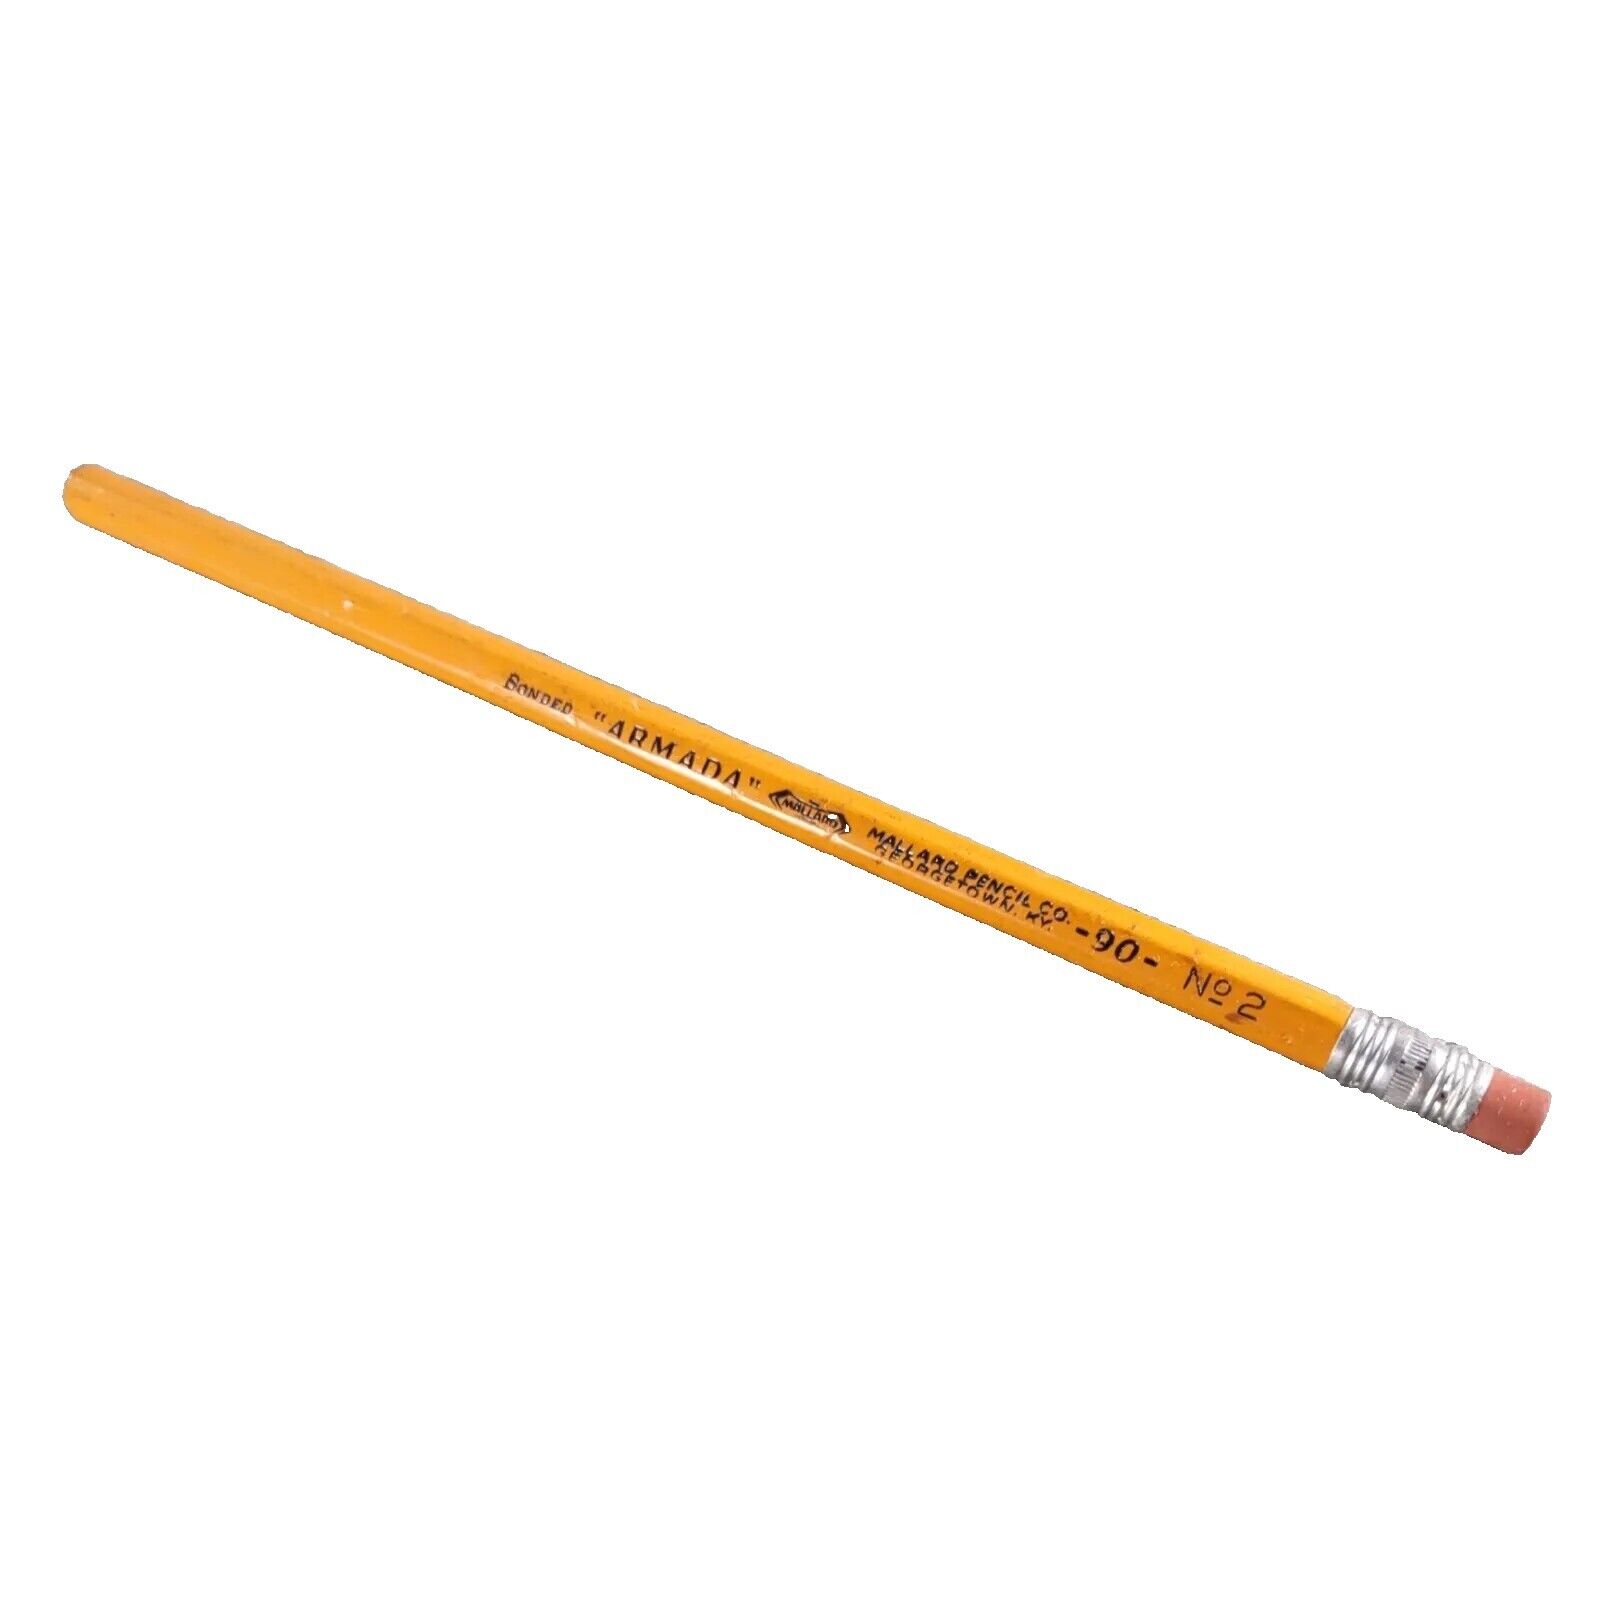 Vintage Bonded Armada Mallard Pencil Co 90 No 2 Unsharpened Pencil